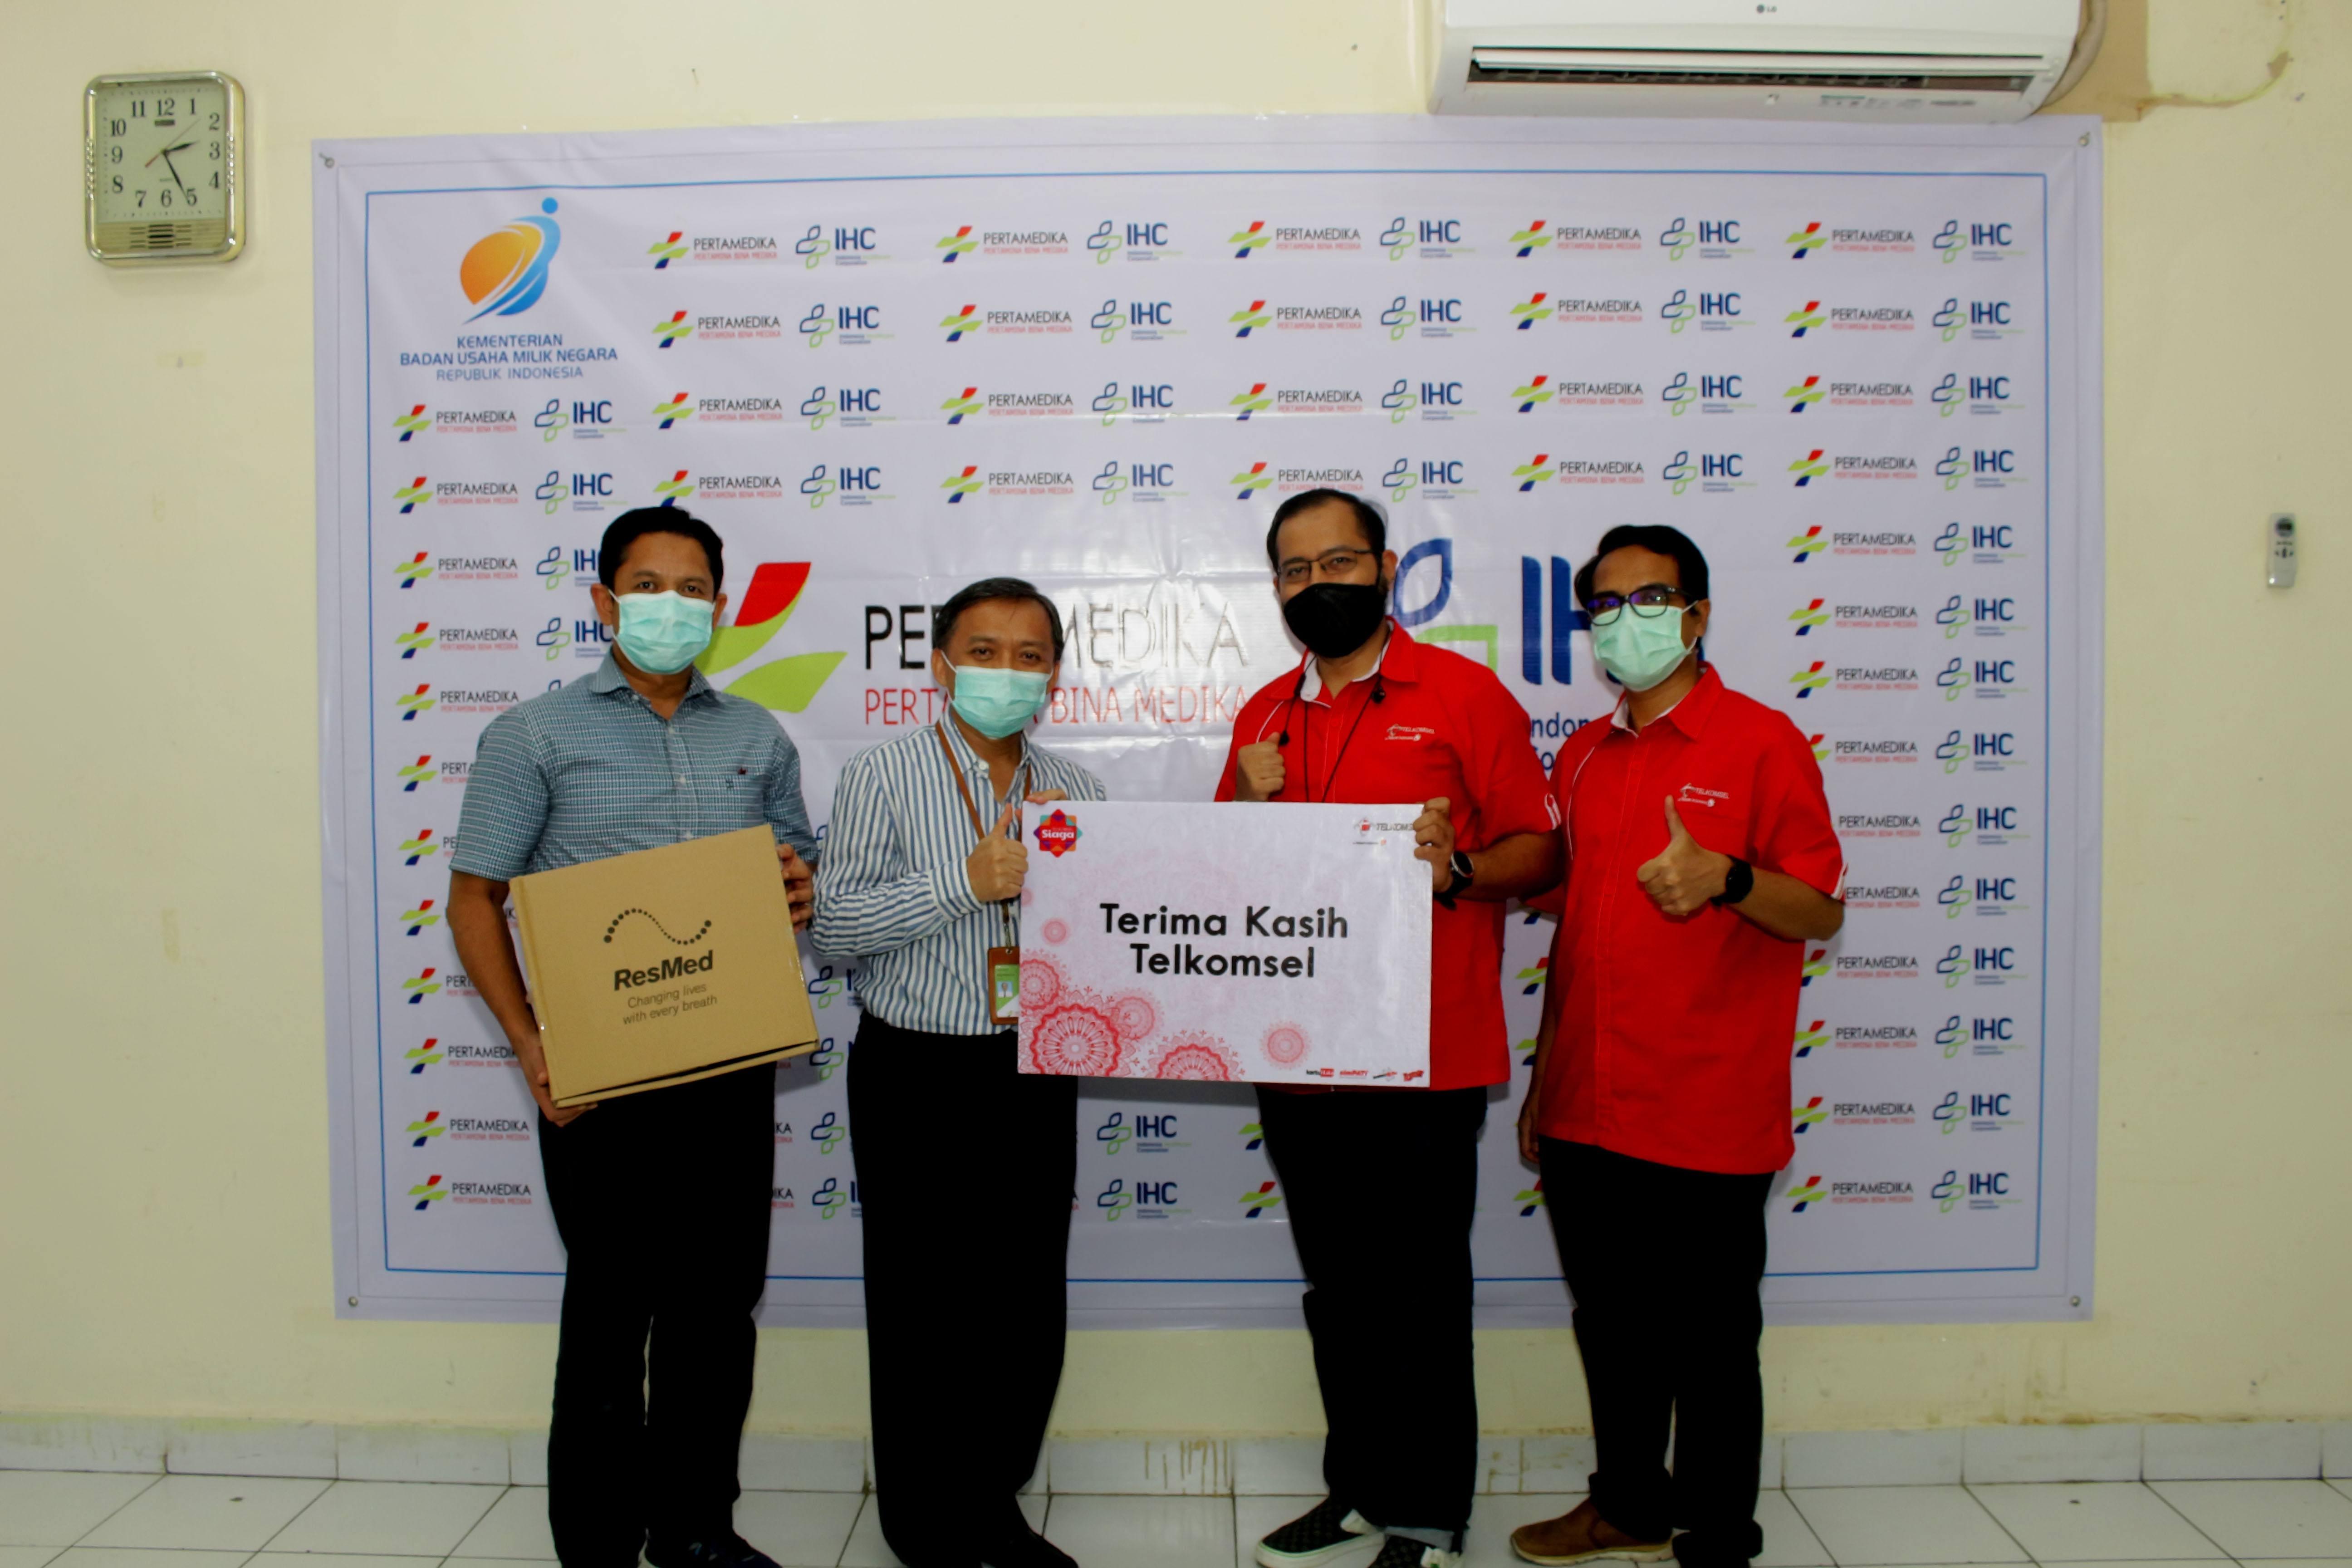 #TerusBergerakMaju Bersama Indonesia, Telkomsel Serahkan Bantuan Ventilator Kepada Rumah Sakit Pertamina Dumai